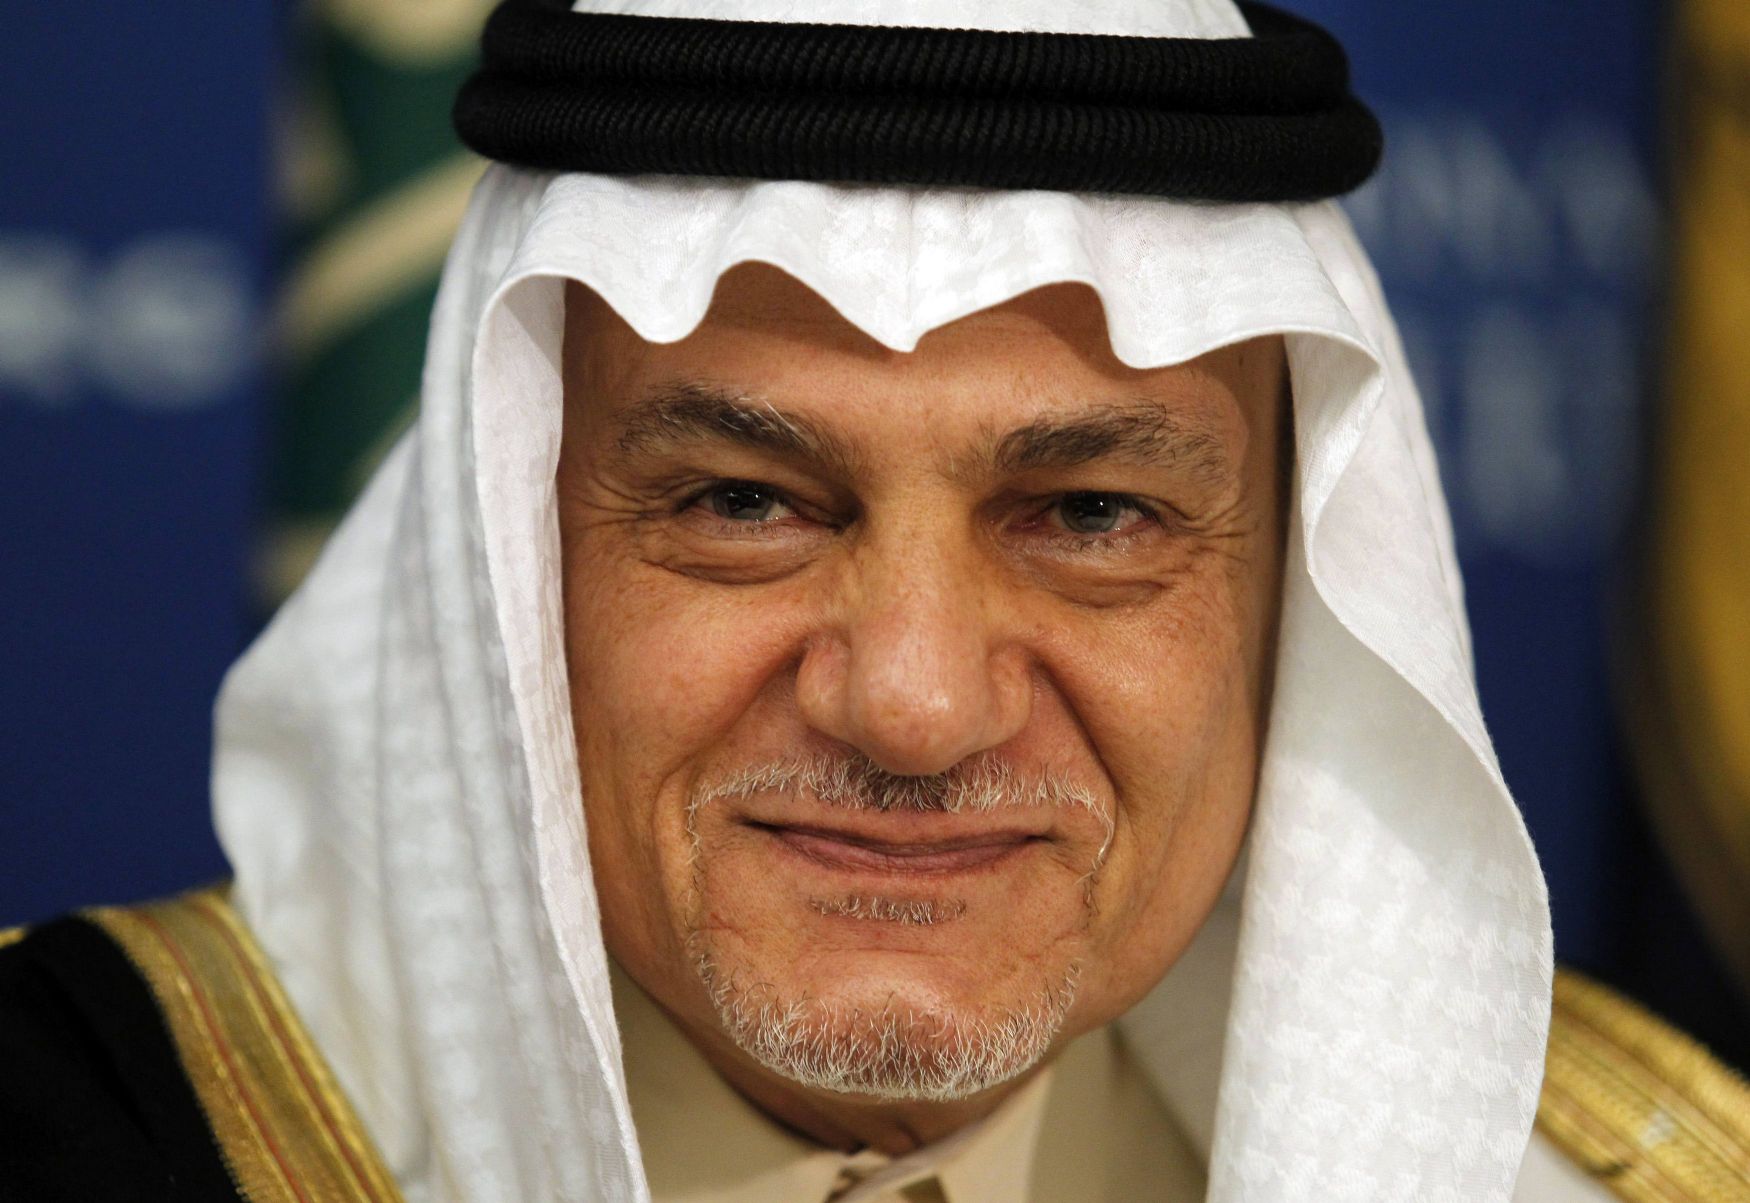 Prince Turki Al Faisal of Saudi Arabia speaks on Saudi issues in Washington